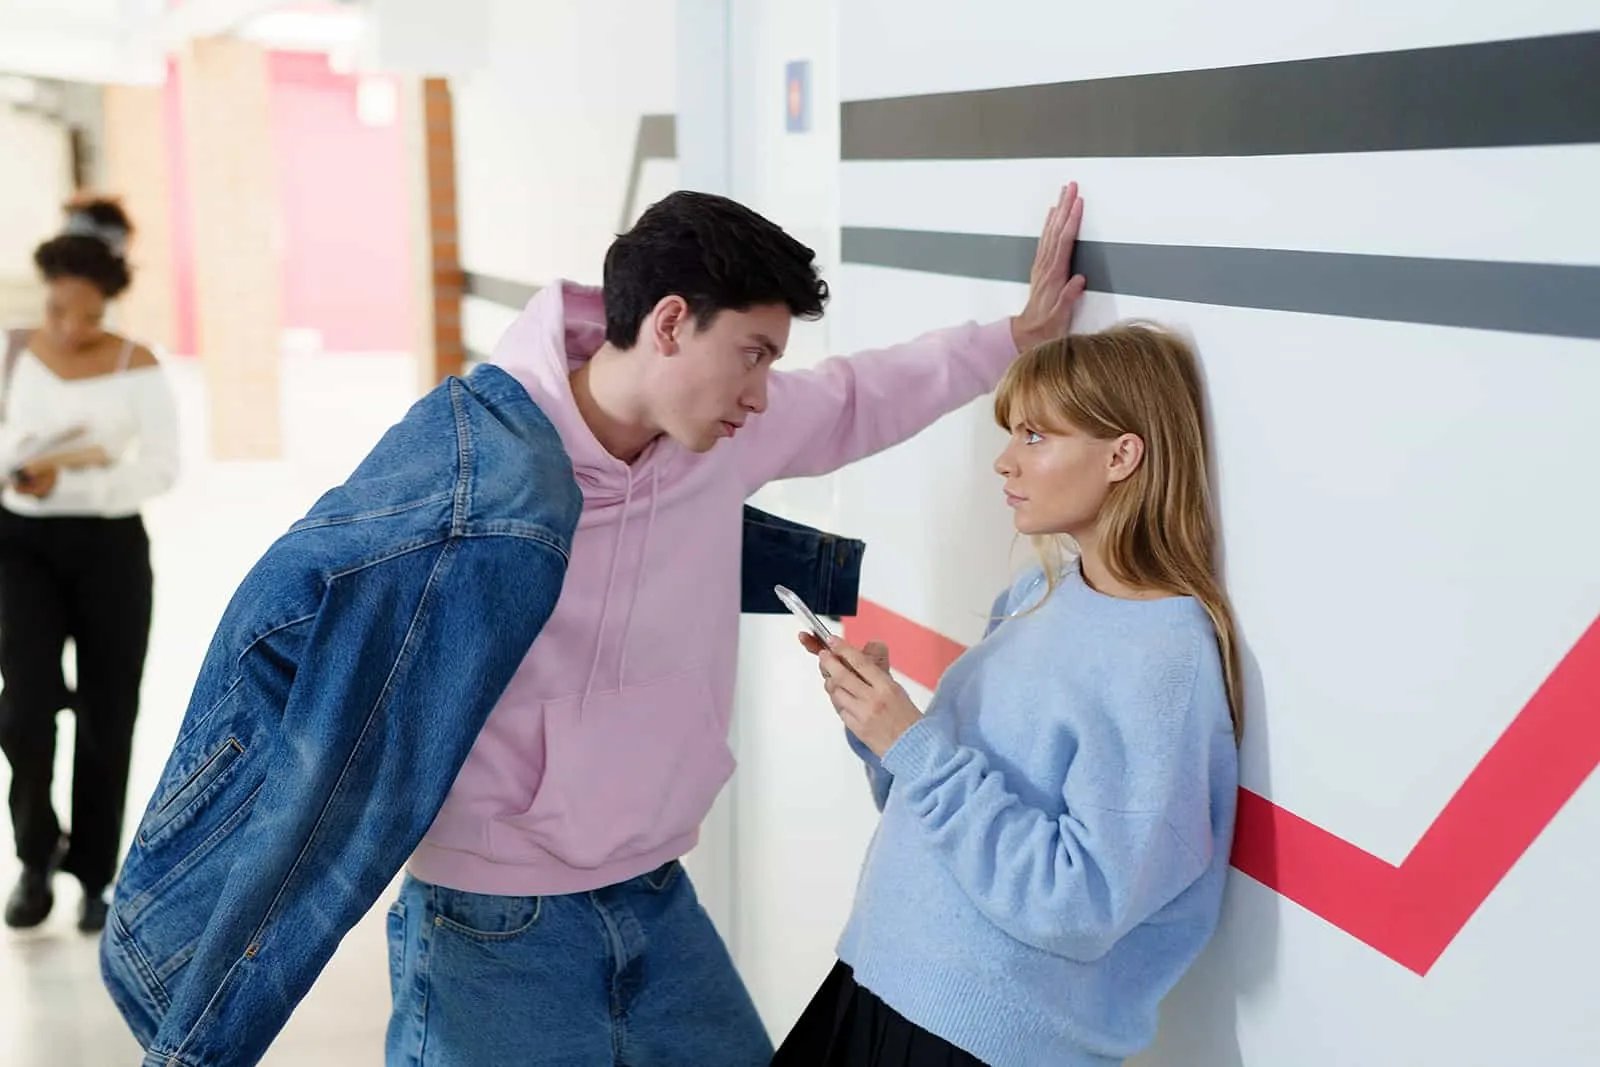 Ein Mann sah eine Frau an, die sich an die Wand lehnte und mit ihm flirtete